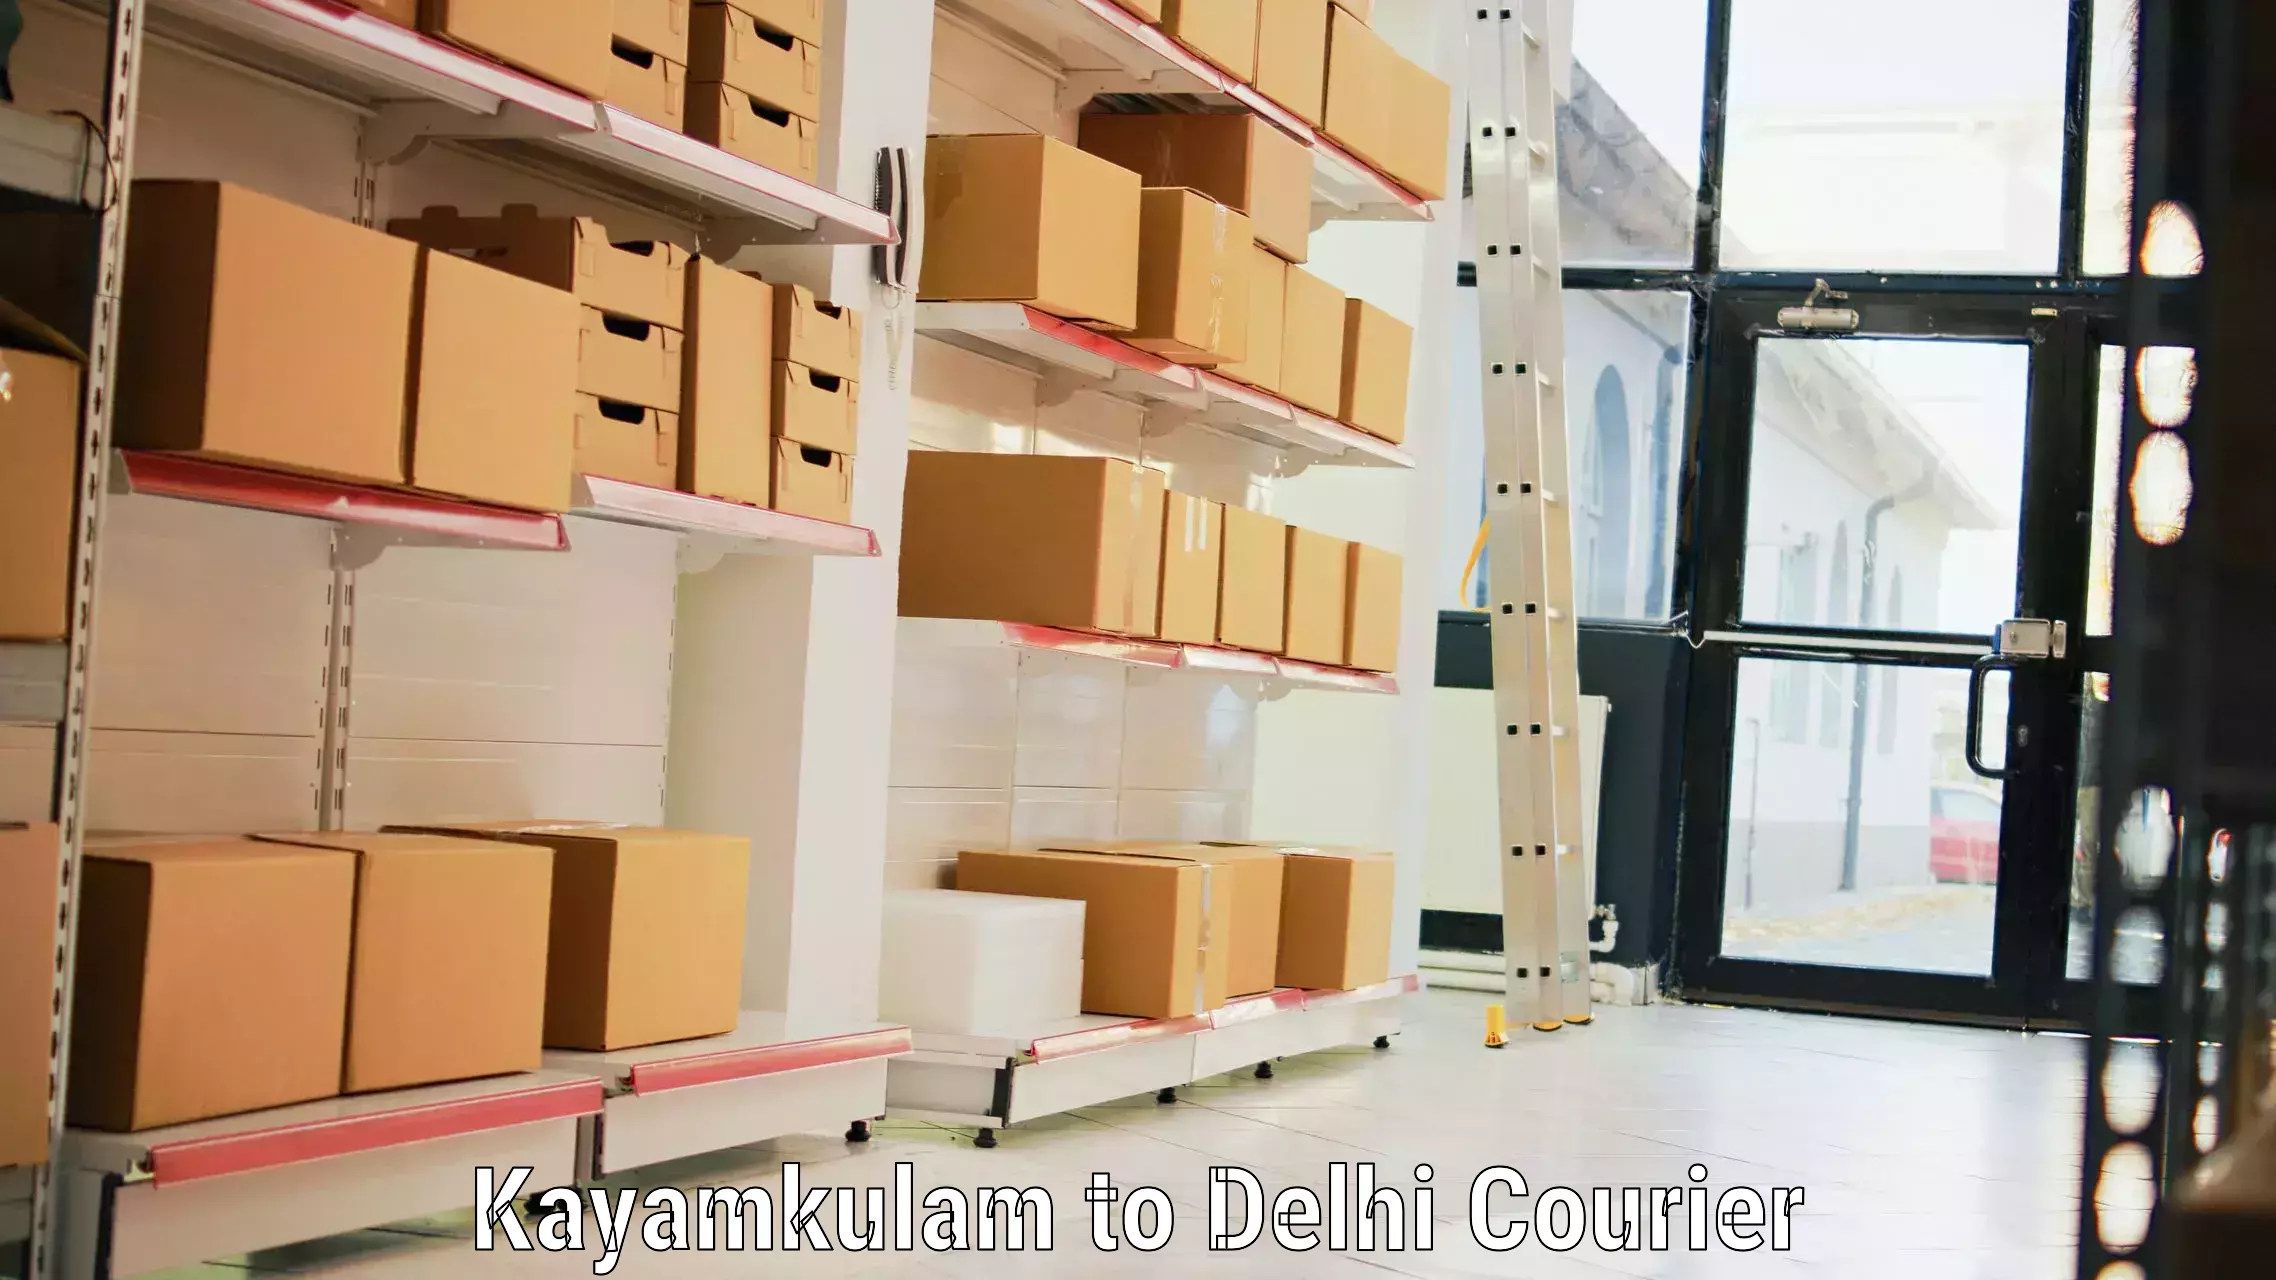 Doorstep luggage collection Kayamkulam to IIT Delhi